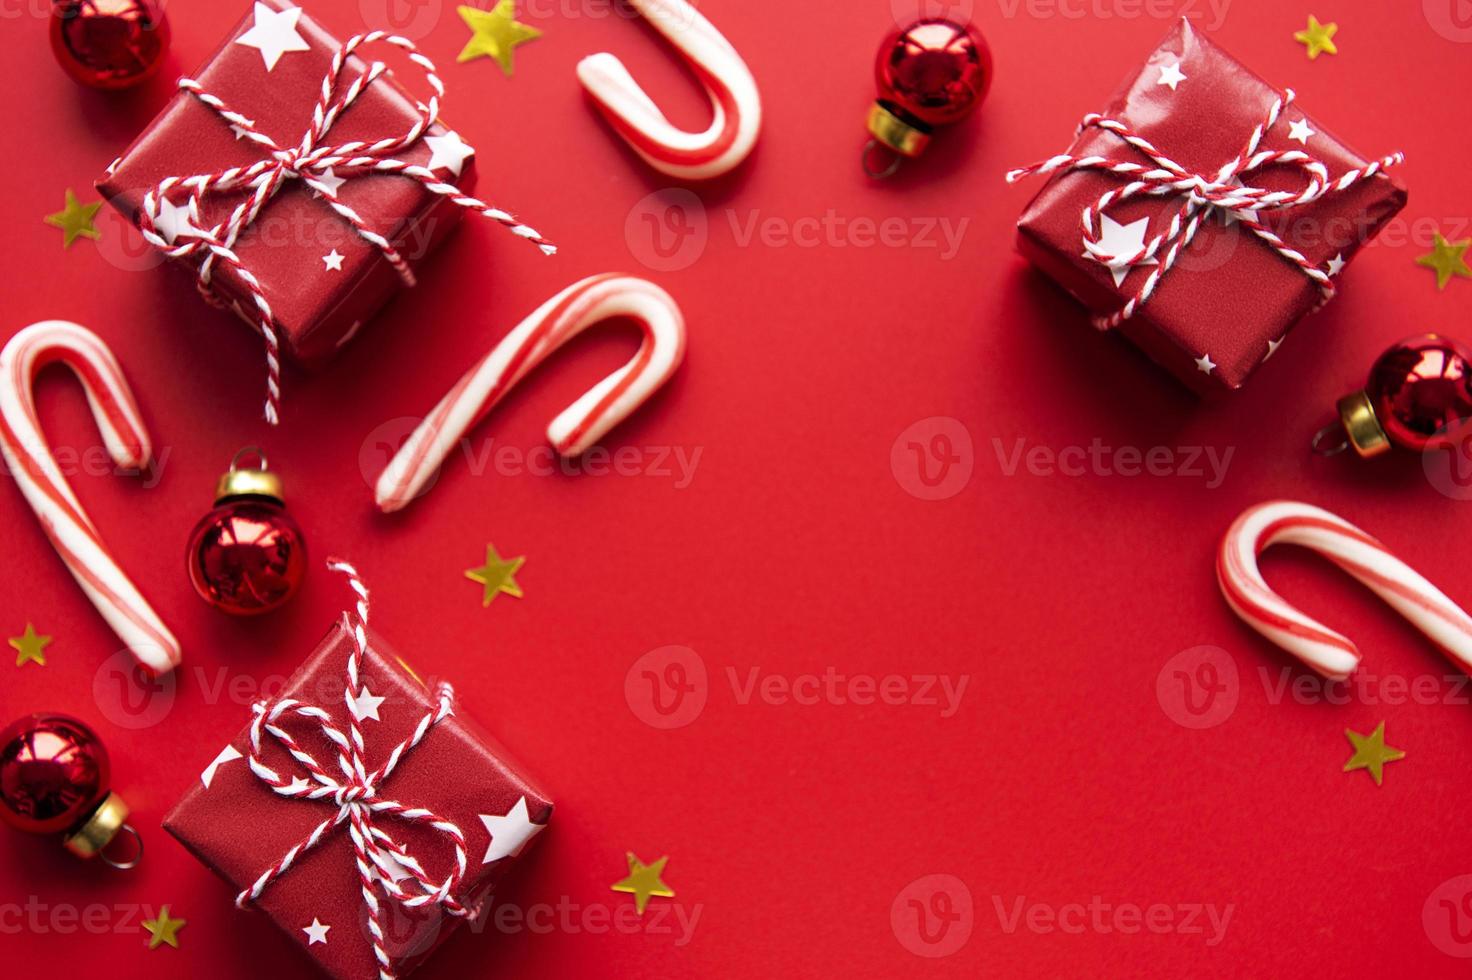 boules de noël rouges, coffrets cadeaux et décoration de canne en bonbon sur fond rouge avec espace de copie photo